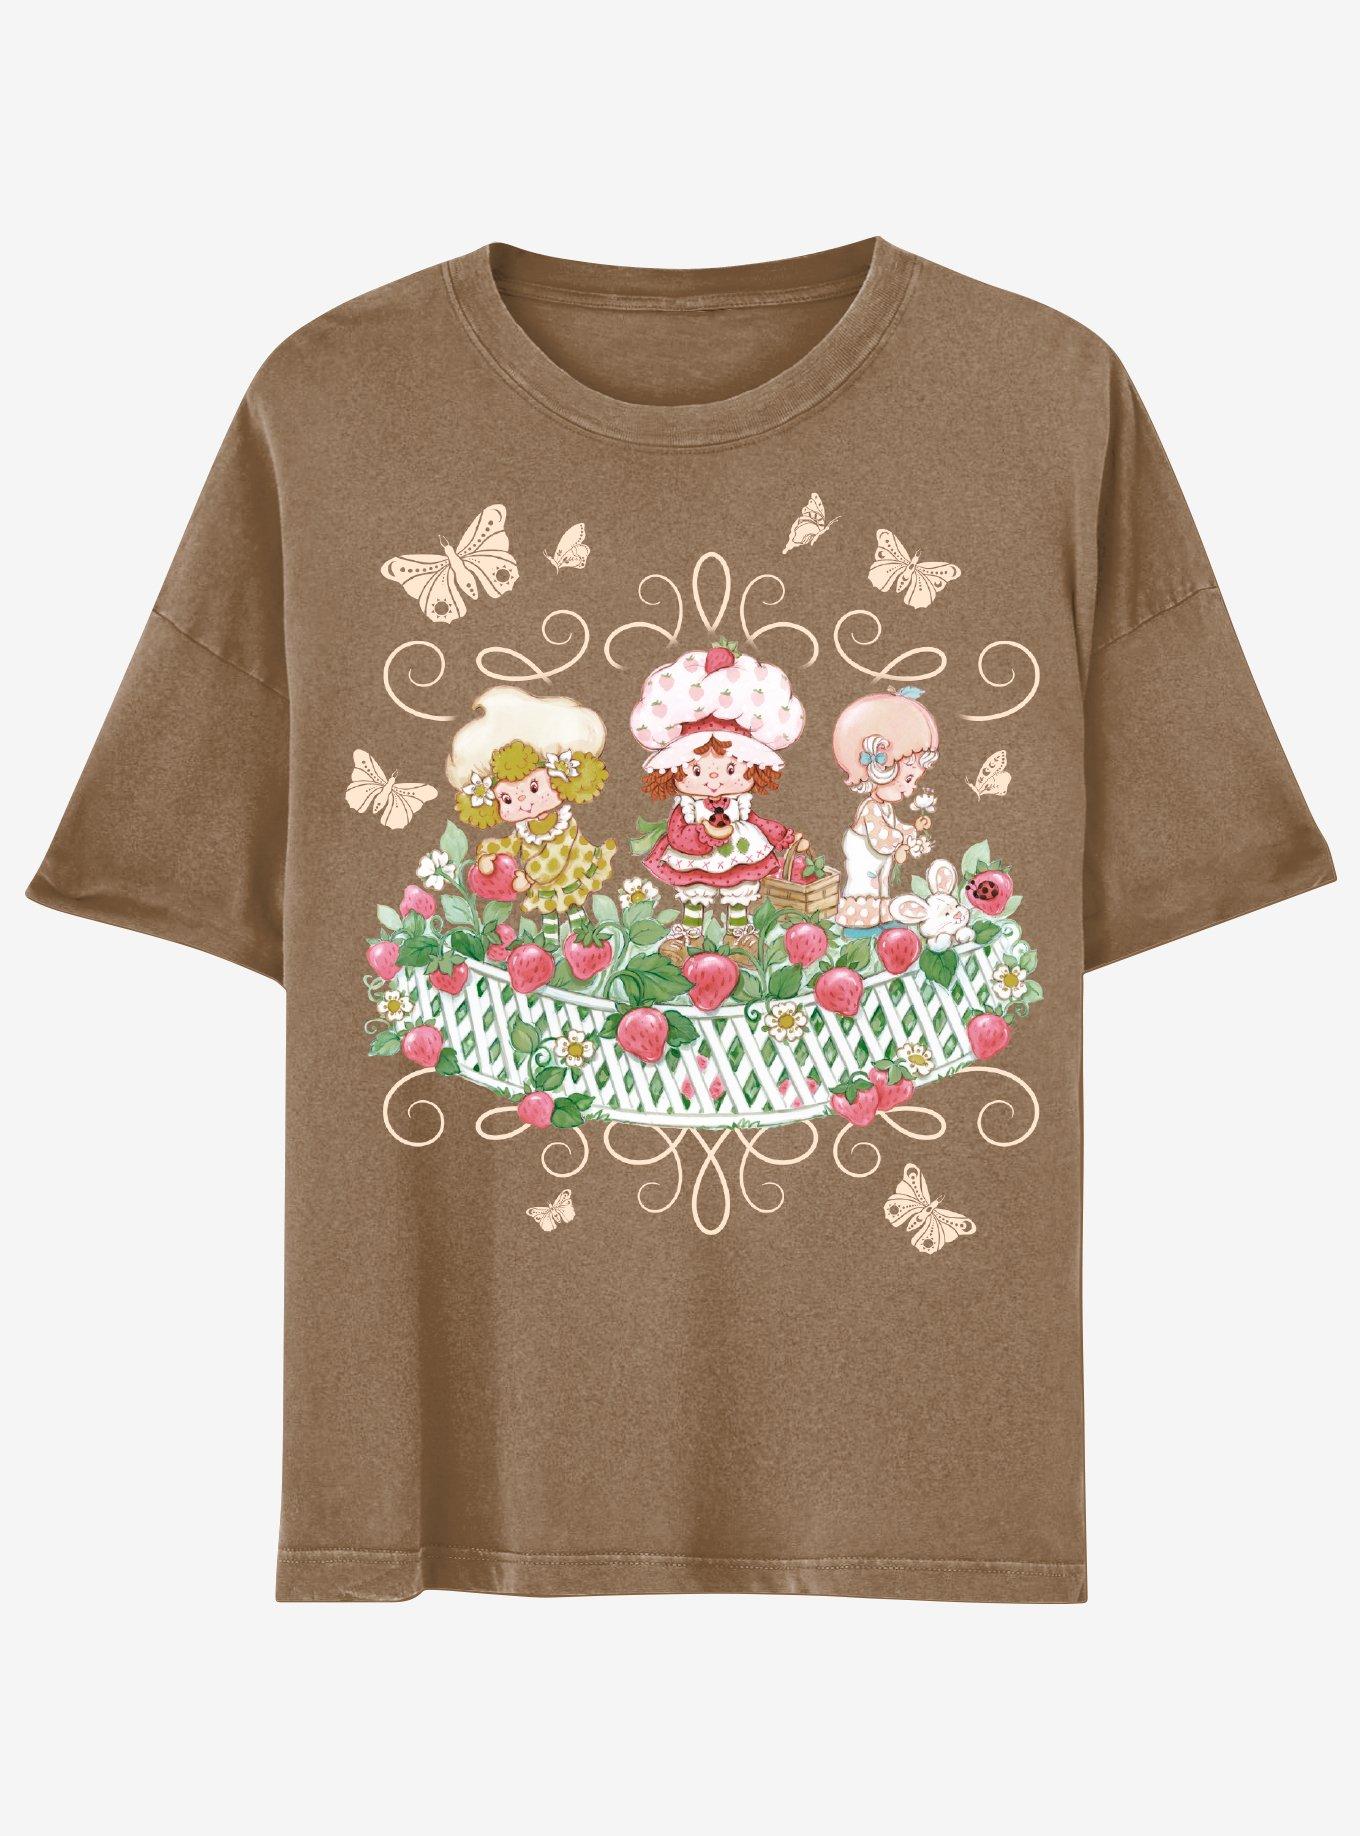 Strawberry Shortcake Brown Garden Boyfriend Fit Girls T-Shirt, MULTI, hi-res